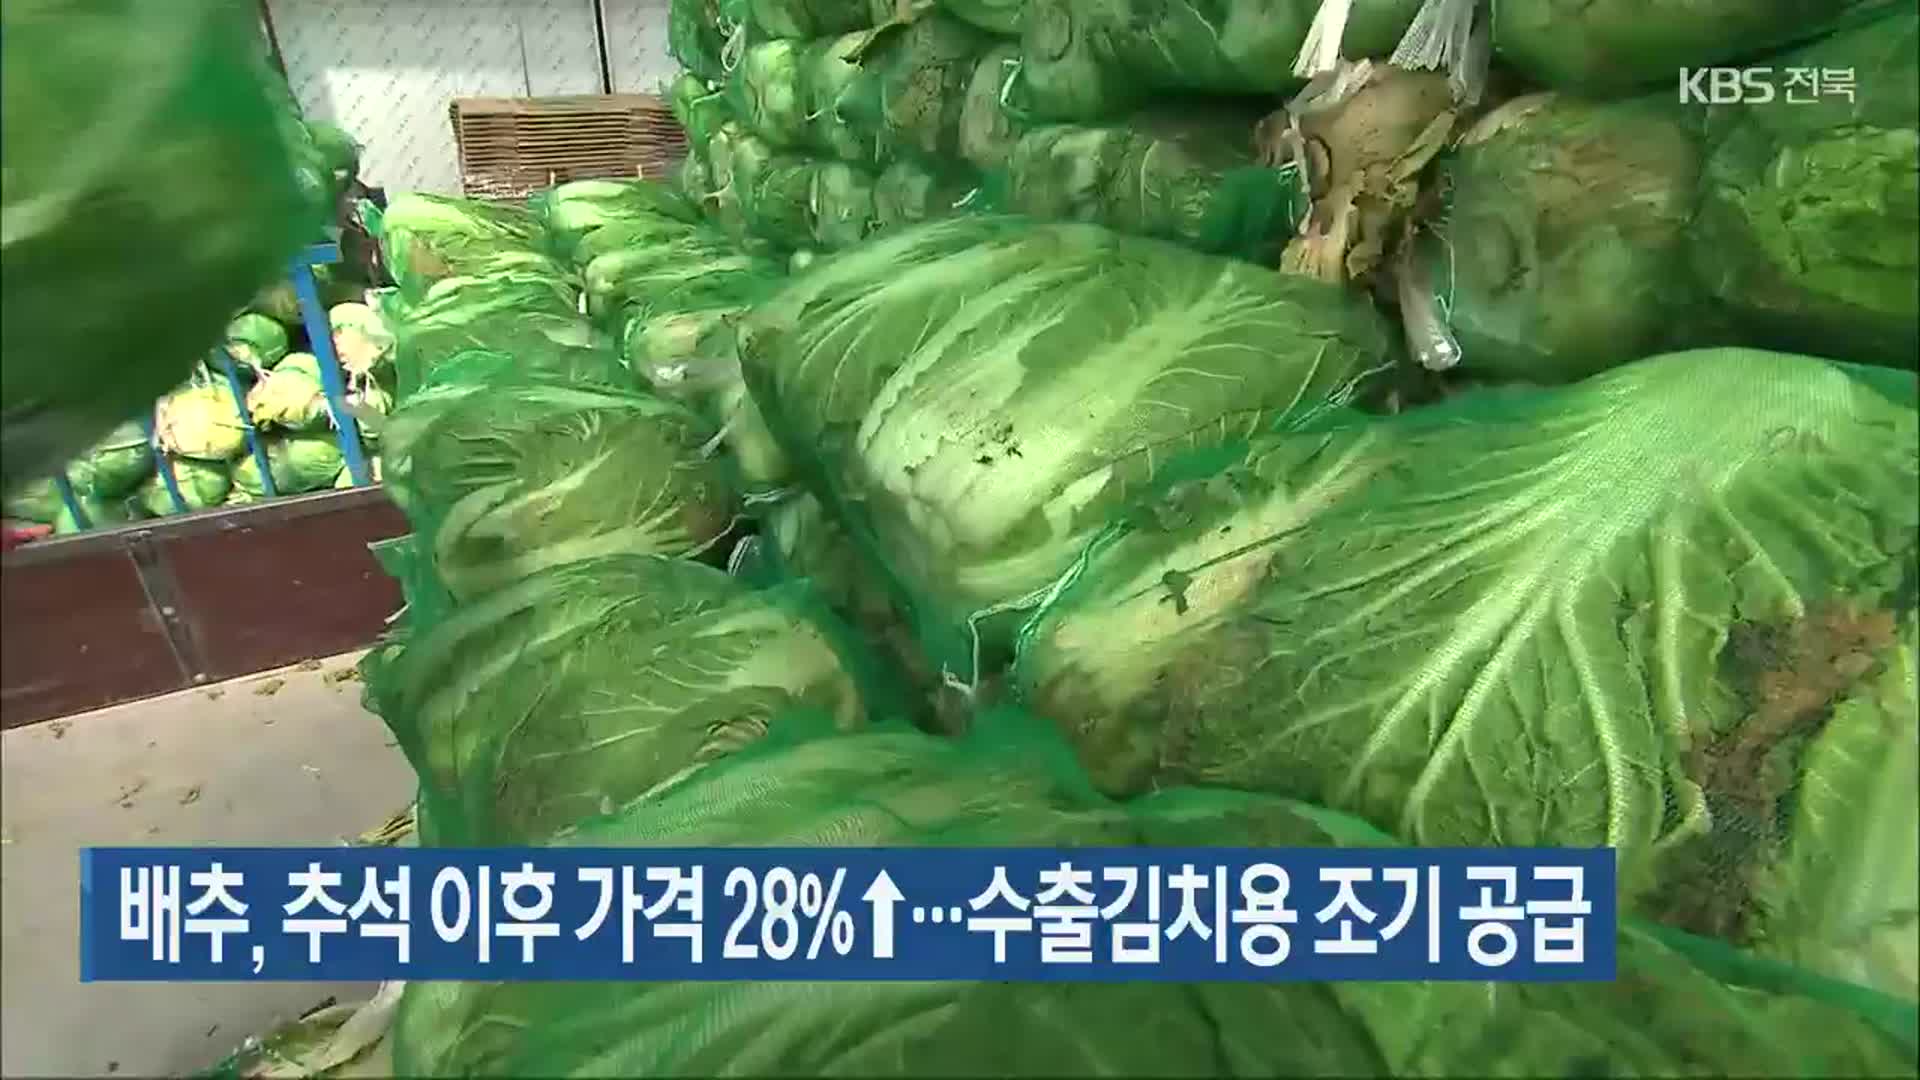 배추, 추석 이후 가격 28%↑…수출김치용 조기 공급